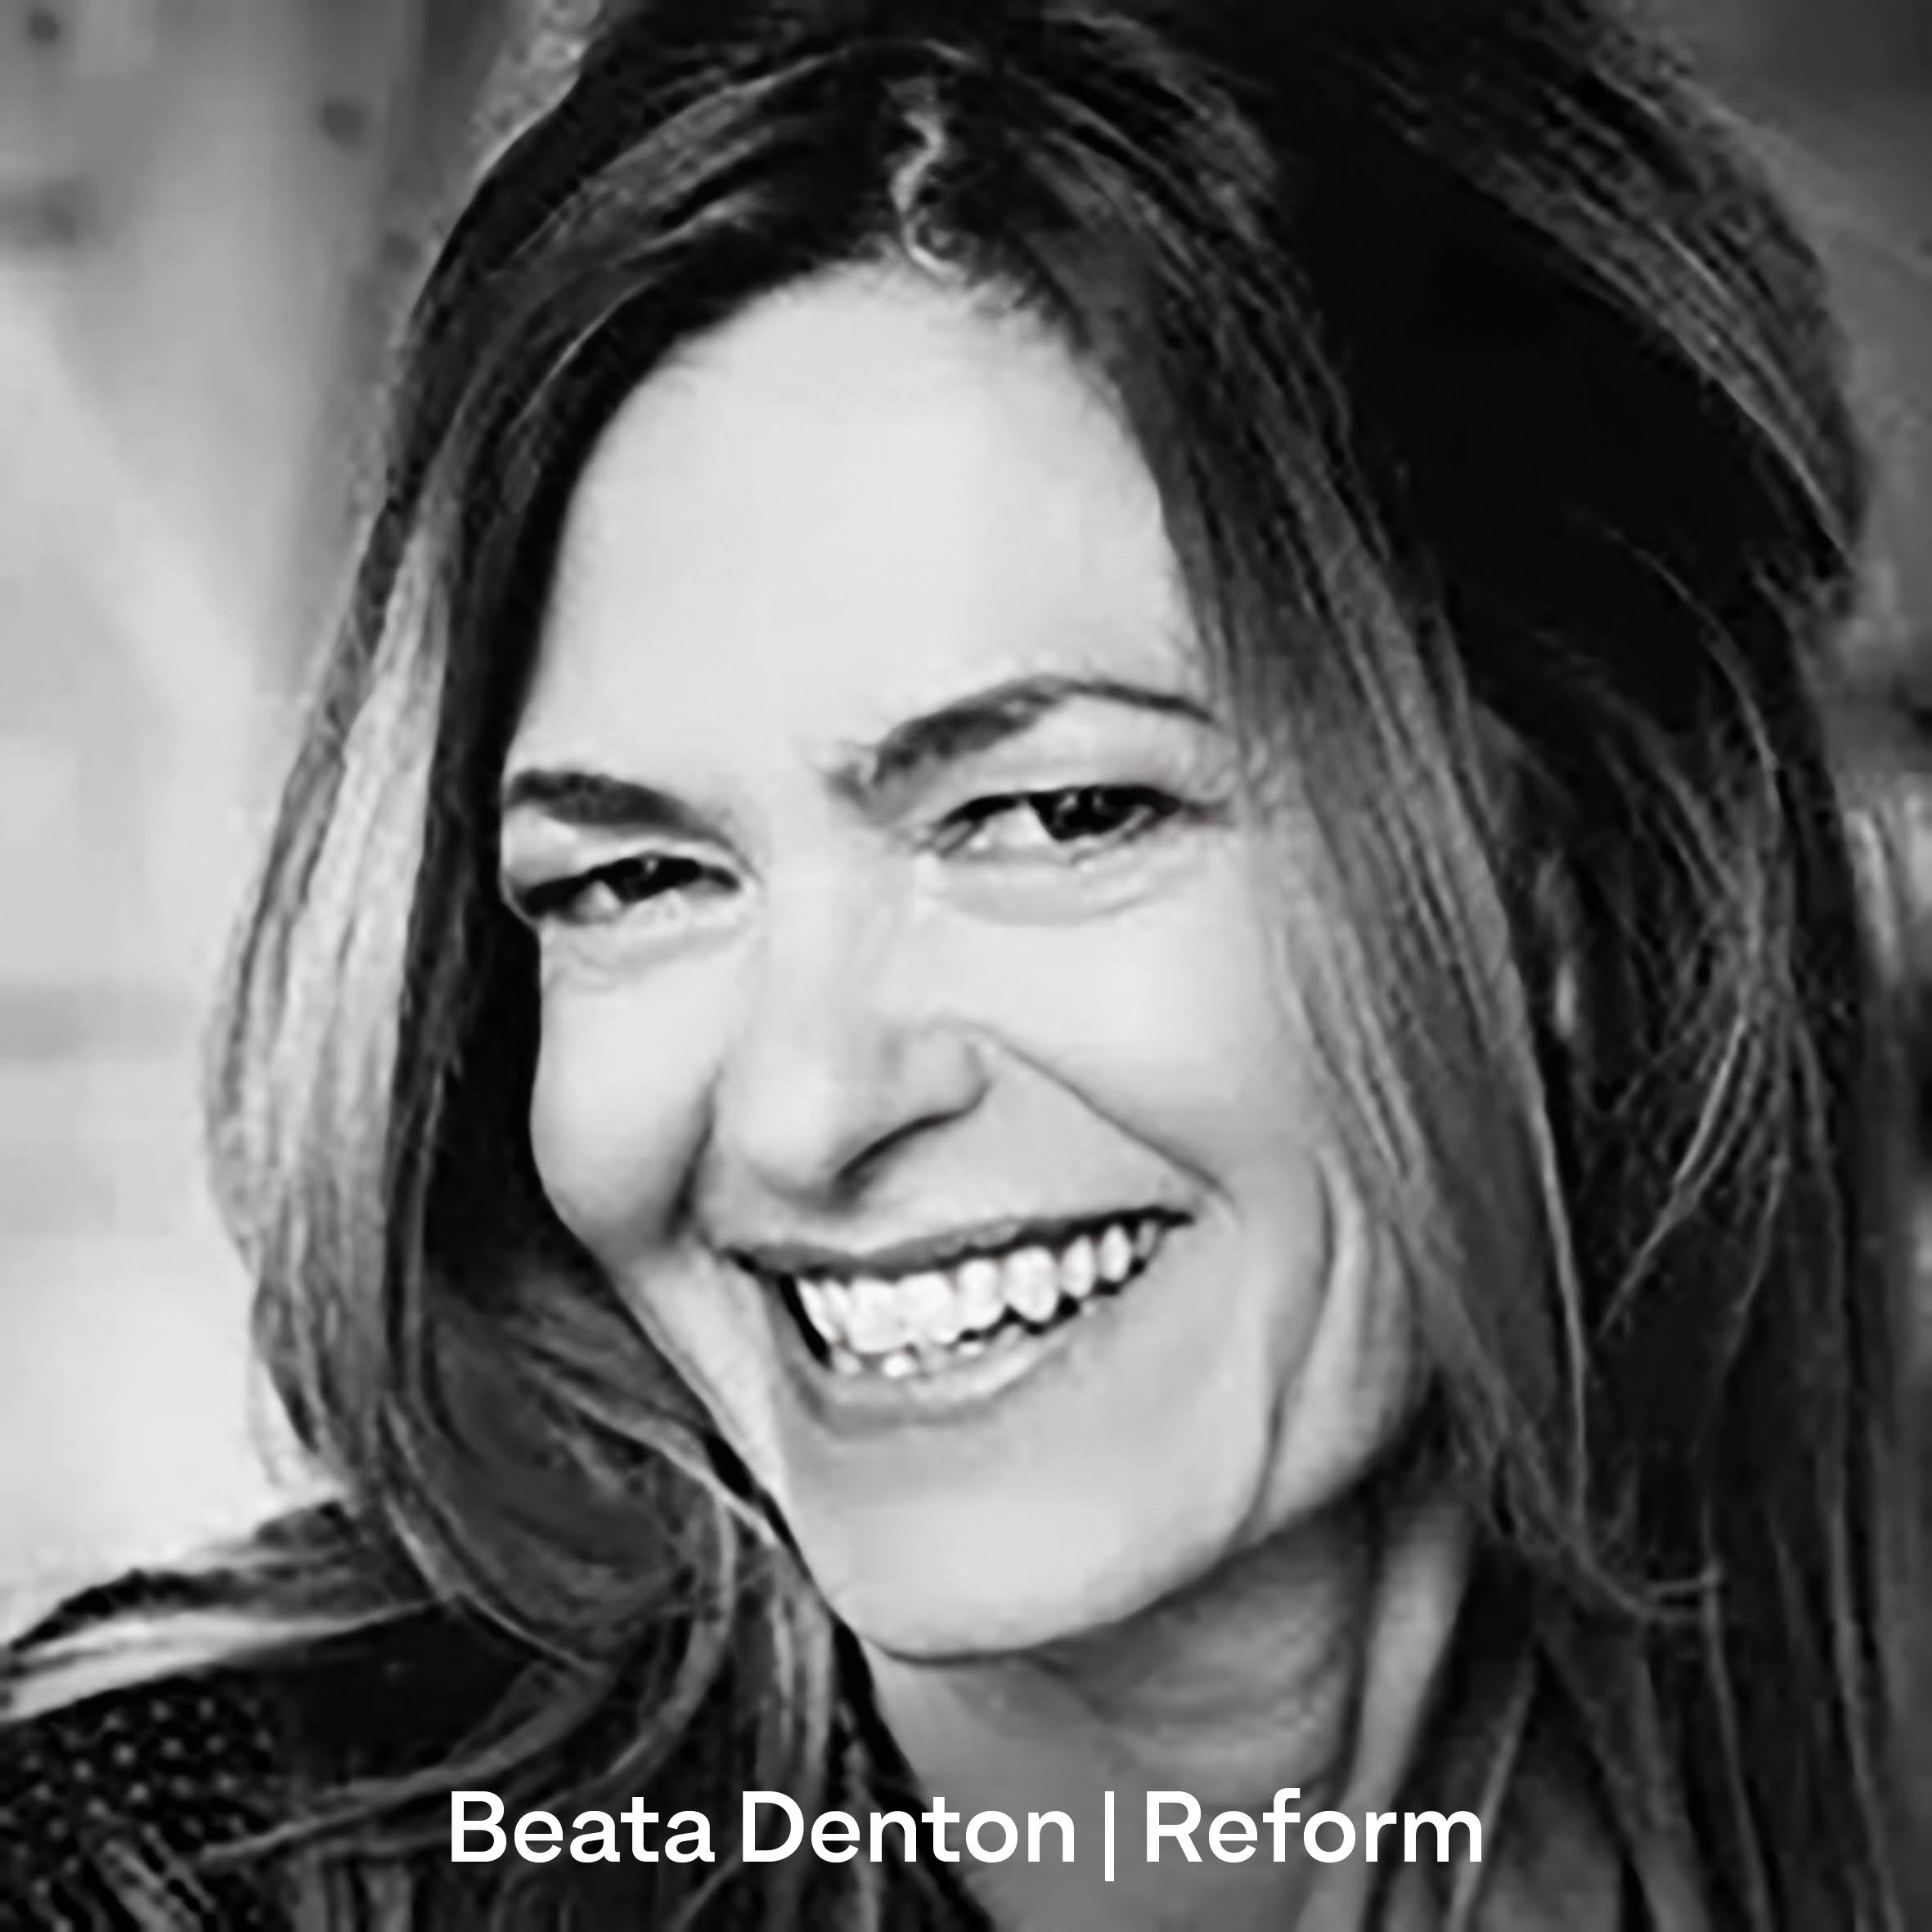 Beata Denton, the lead lighting designer at Reform Reflex Arkitekter in Sweden